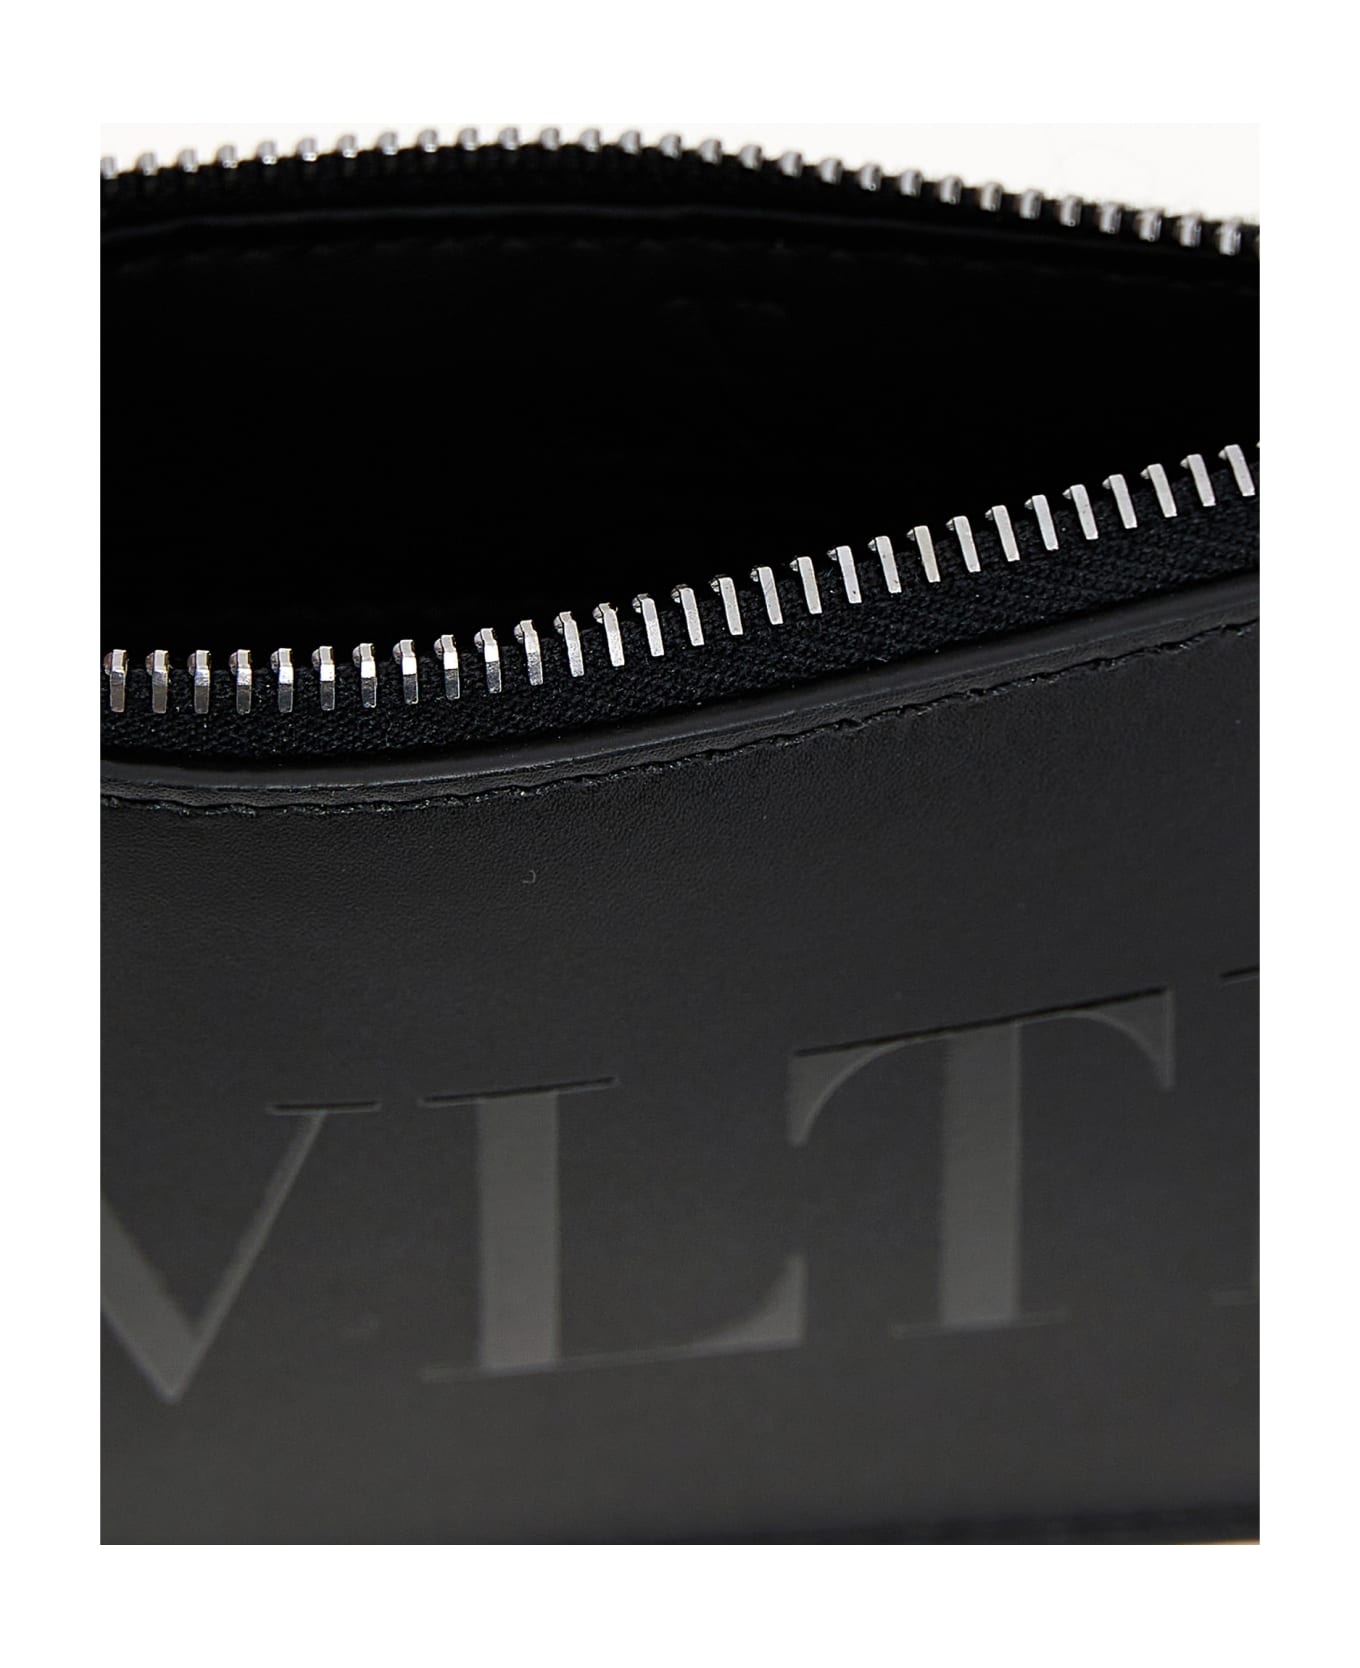 Valentino lace Garavani Vltn Cardholder - Black  